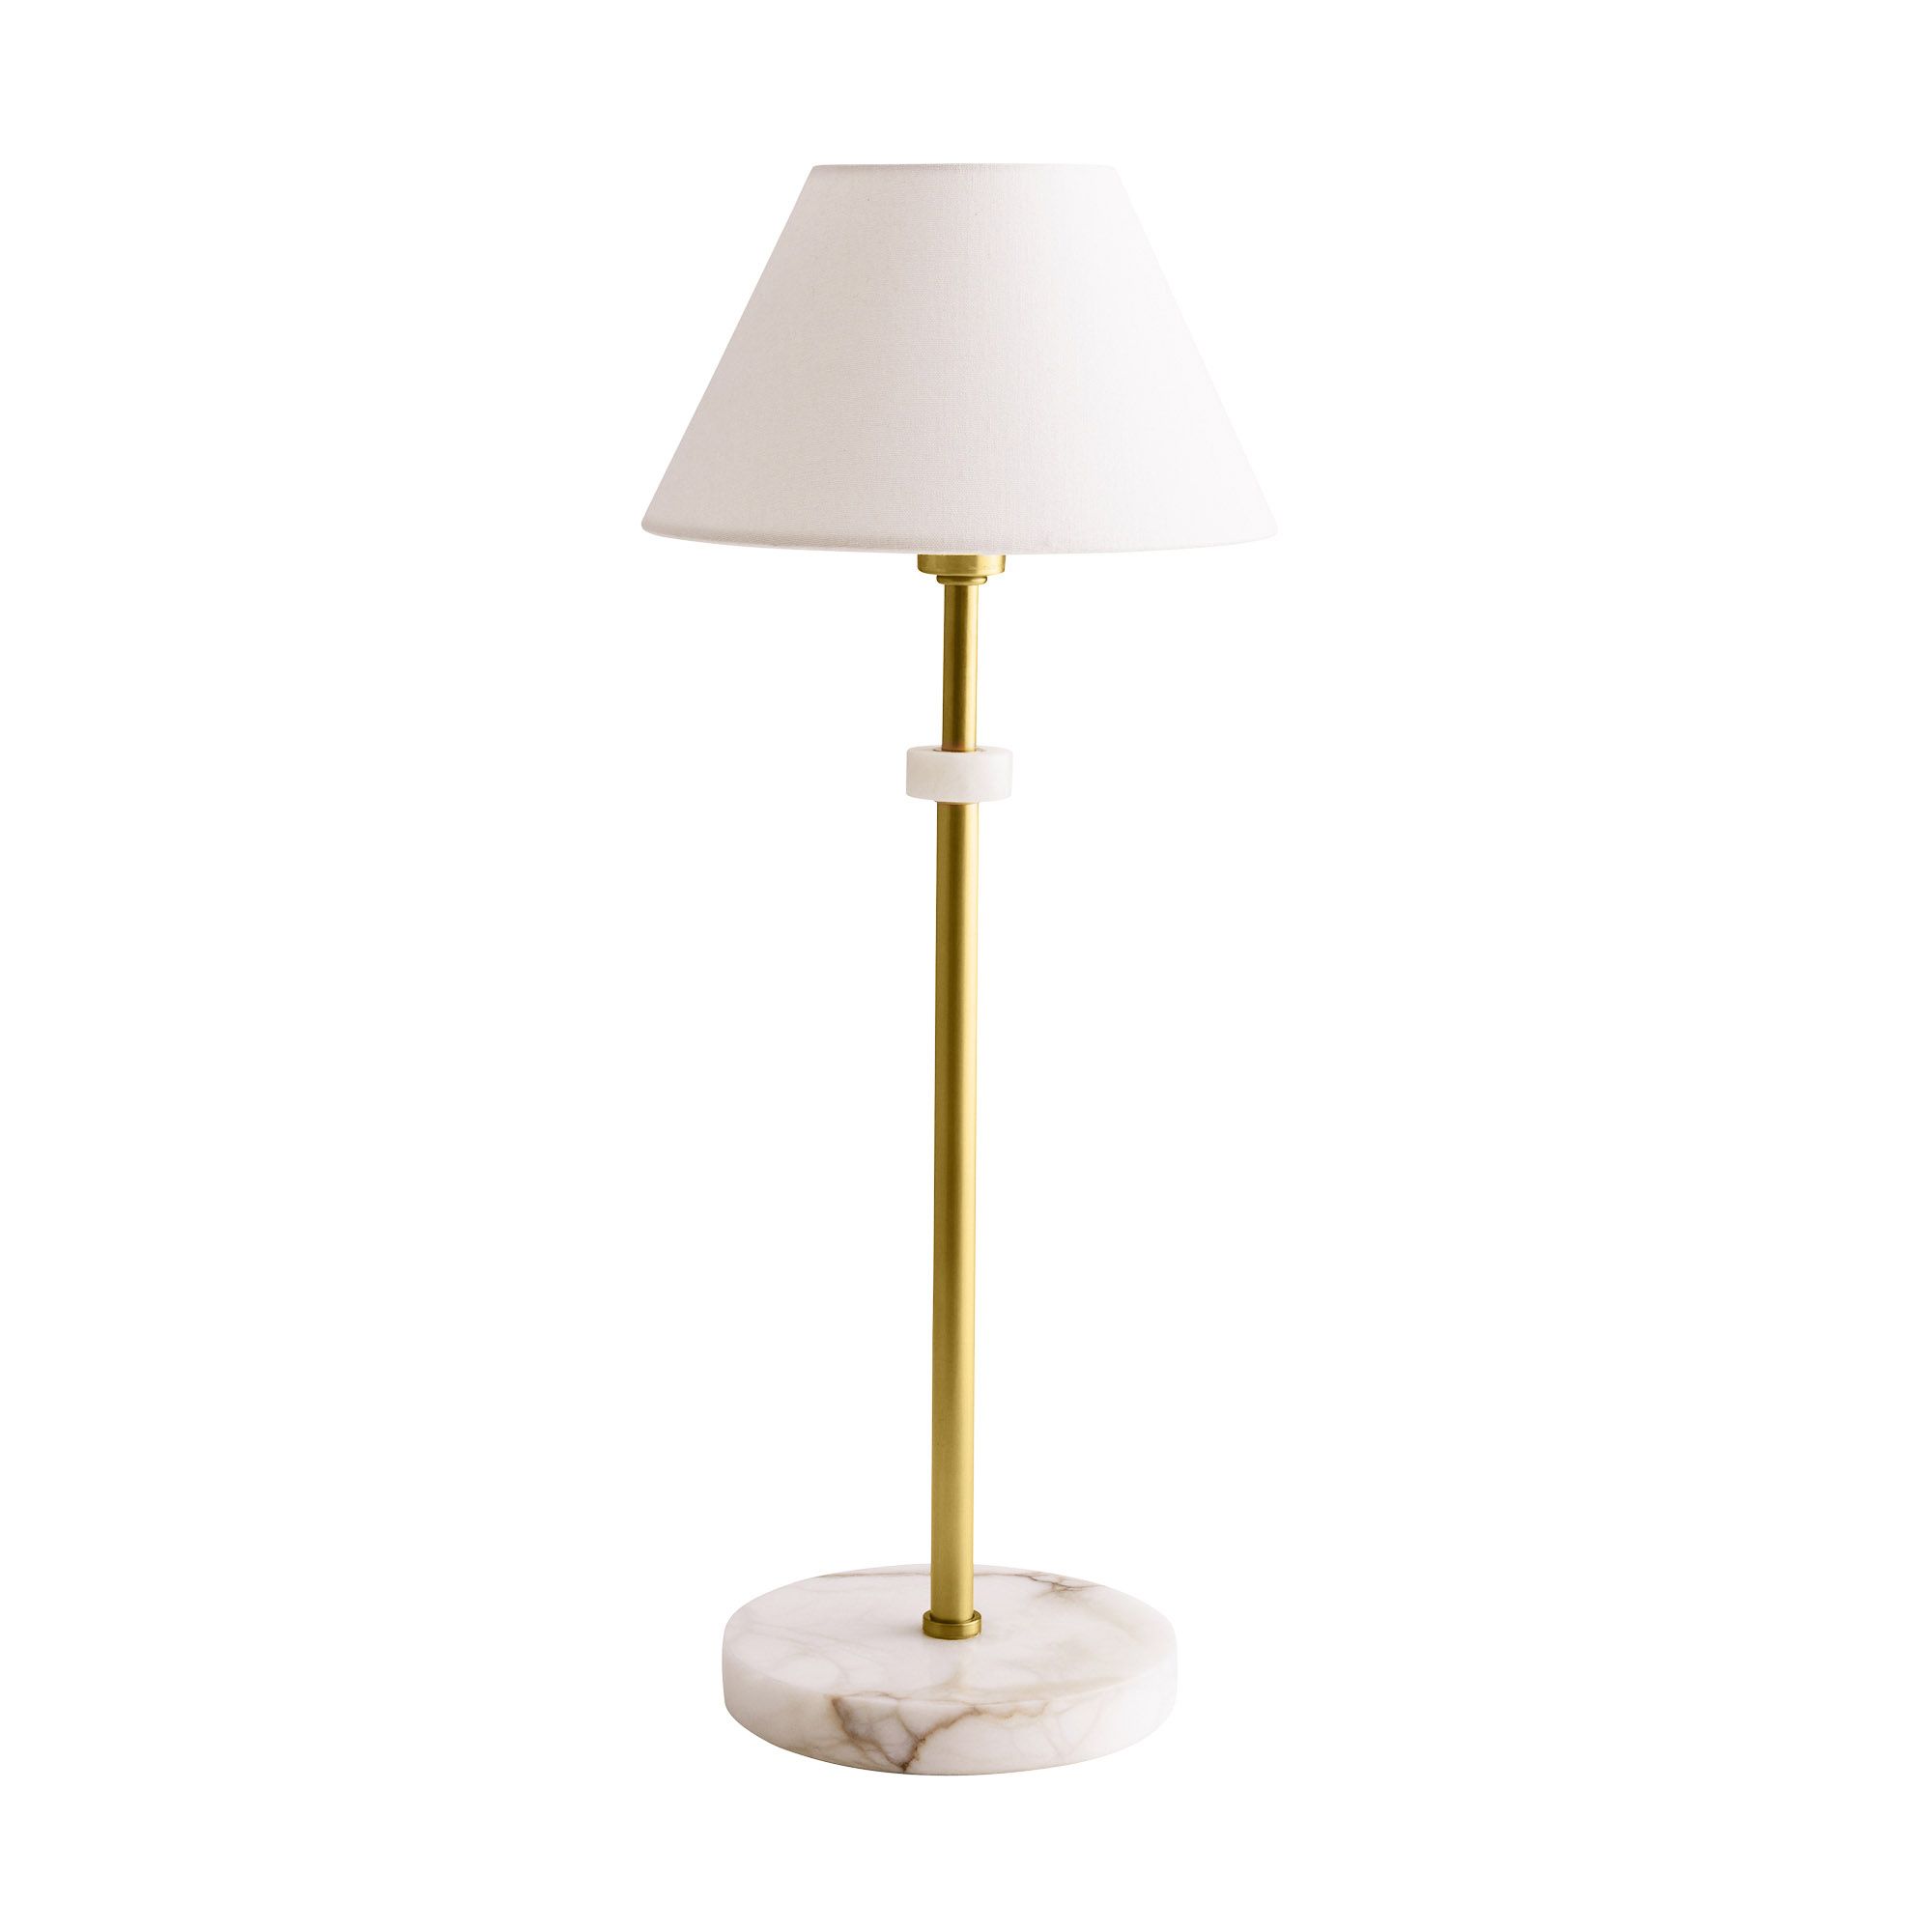 Купить Настольная лампа Newport Lamp в интернет-магазине roooms.ru